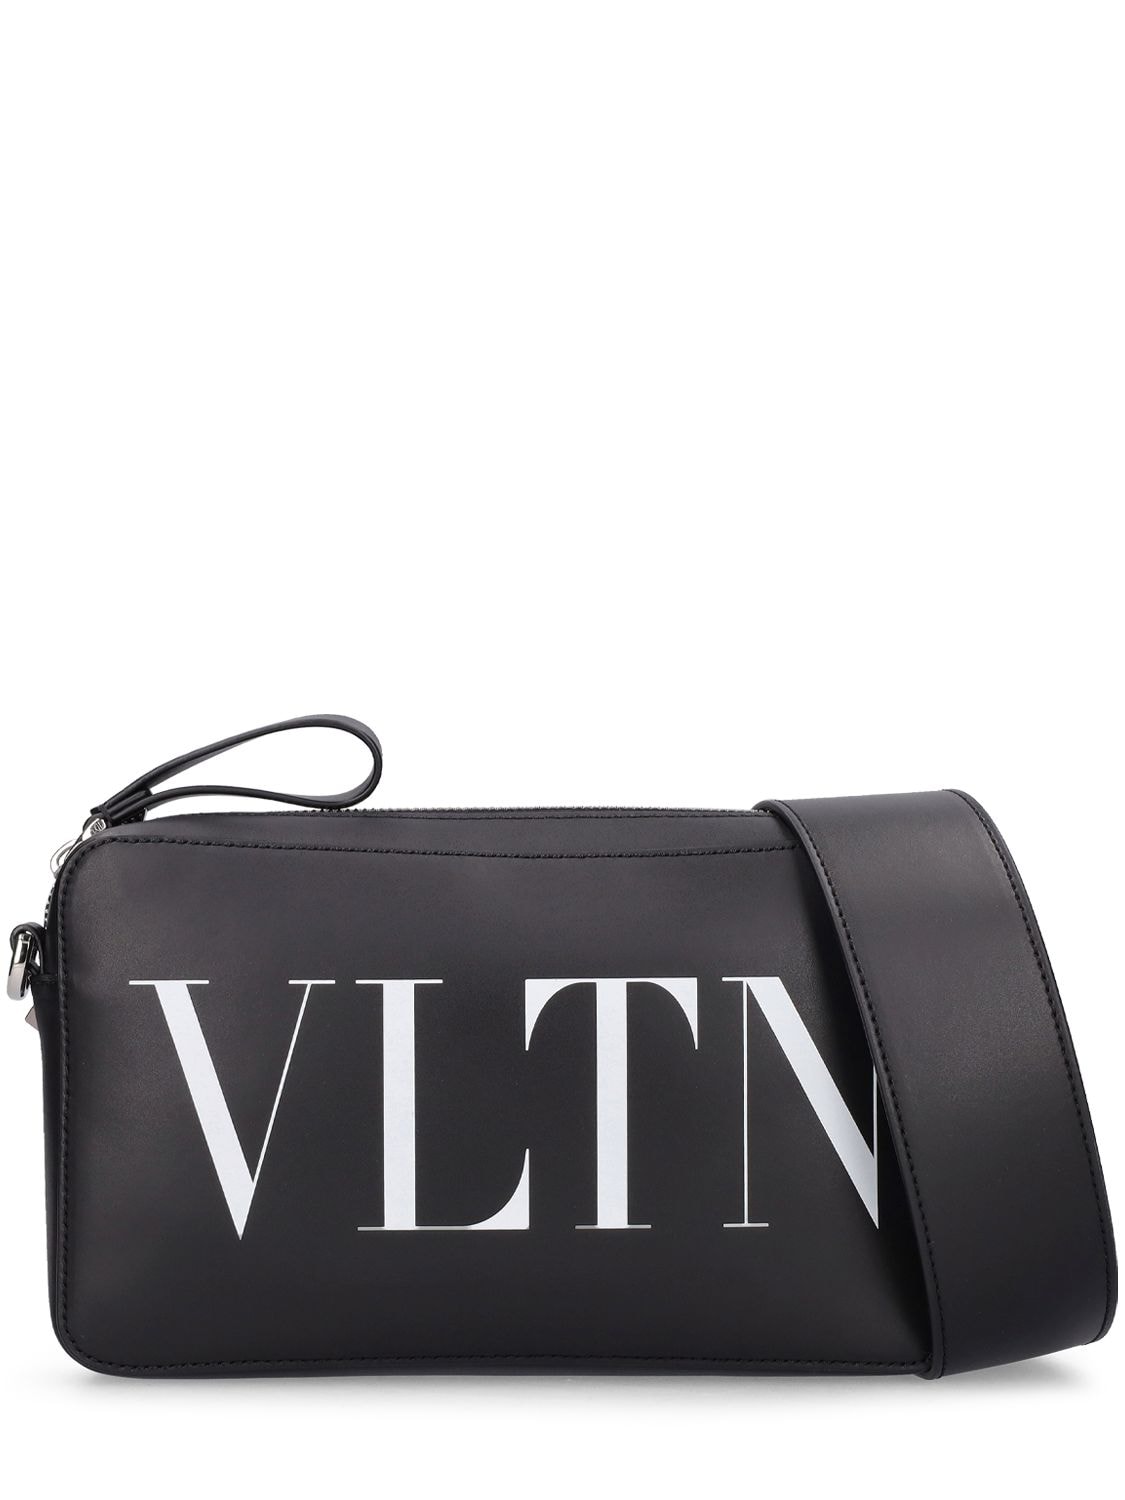 Image of Vltn Leather Cross Body Bag